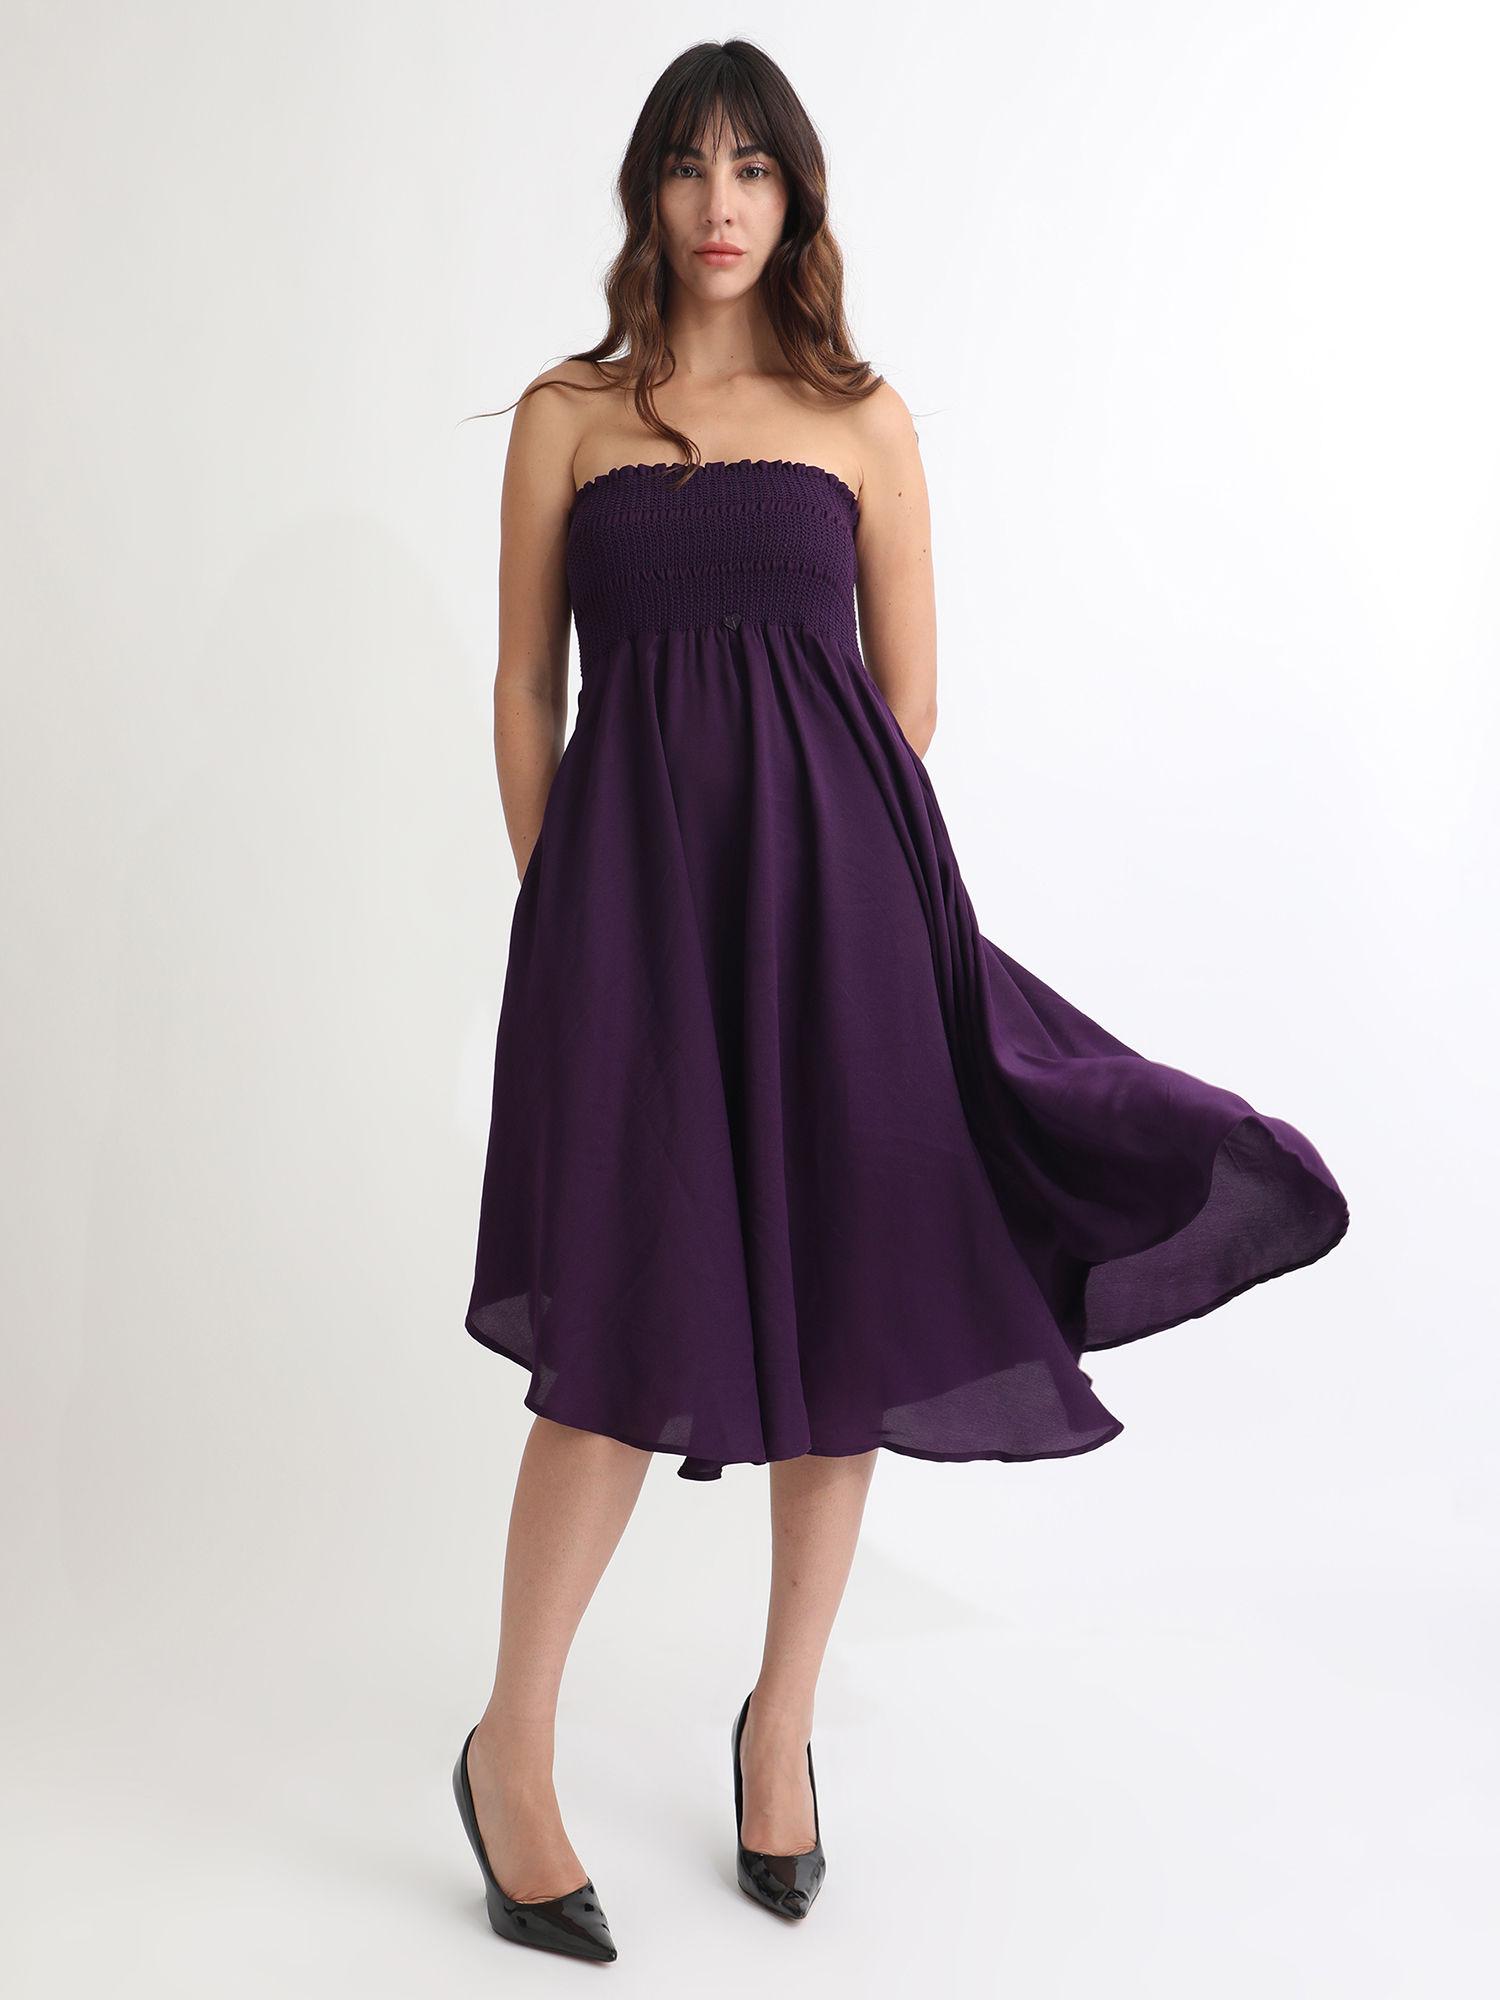 zuret dark purple knee length dress